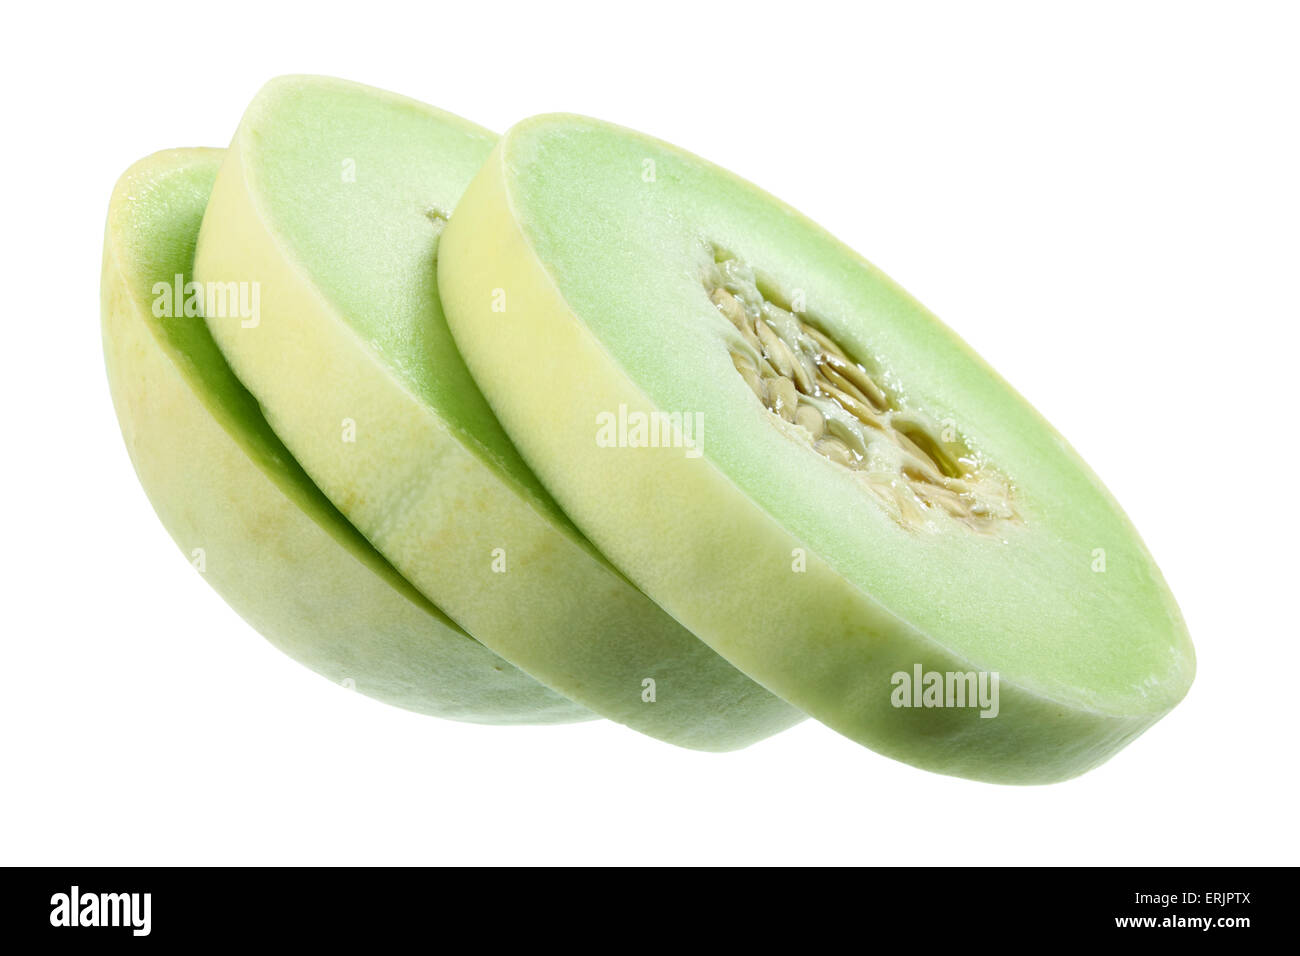 Slices of Honeydew Melon Stock Photo